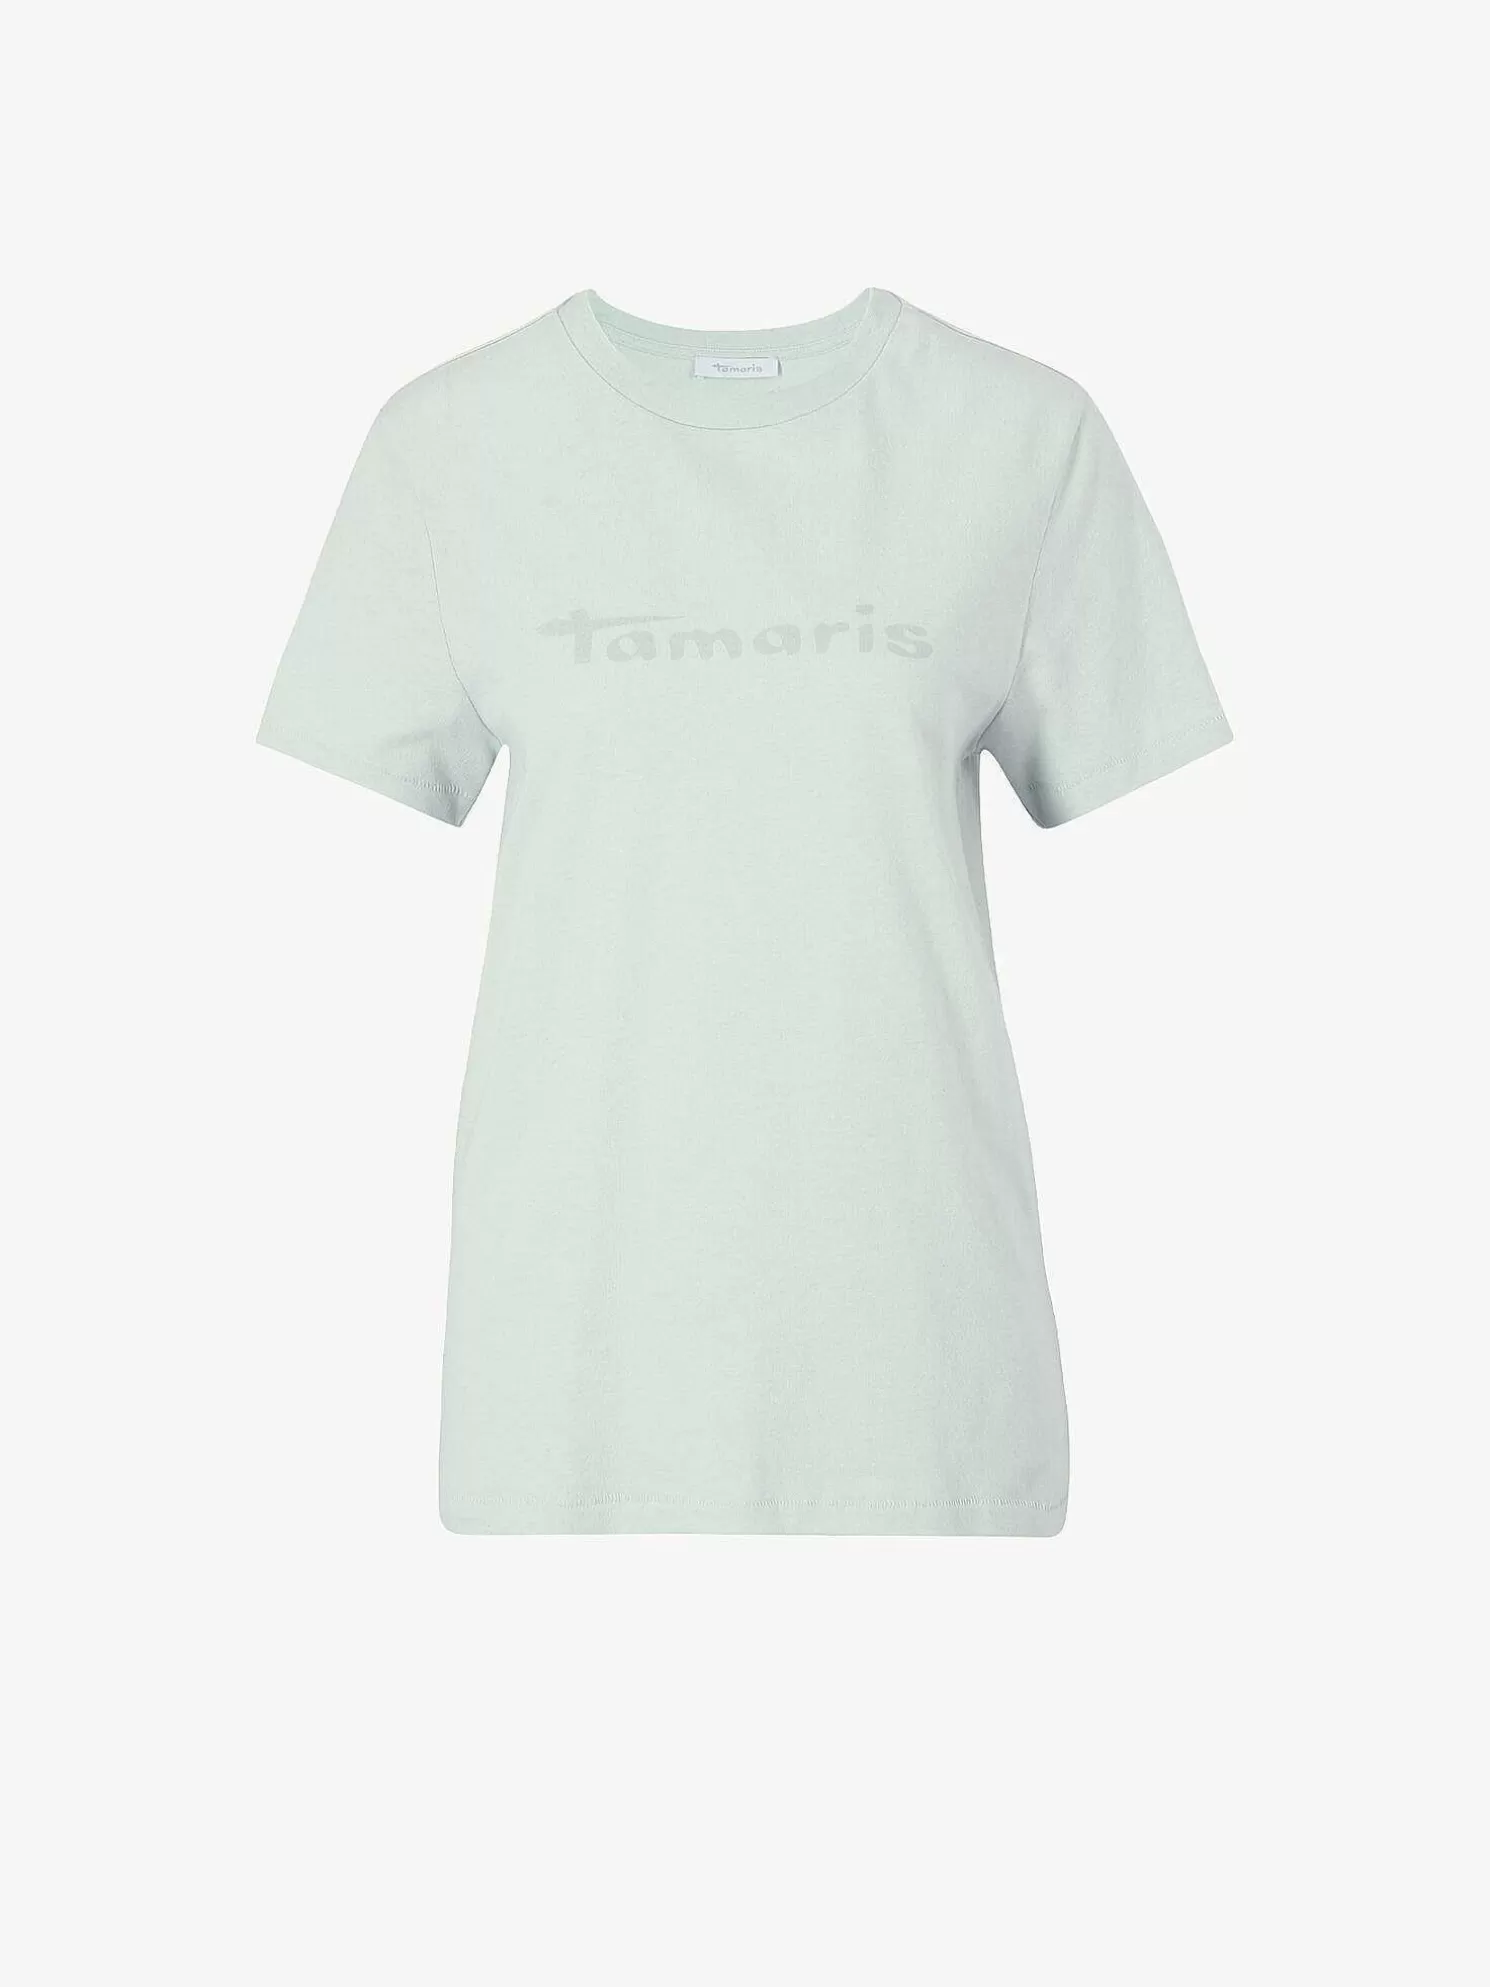 T-Shirt - Grun*Tamaris Best